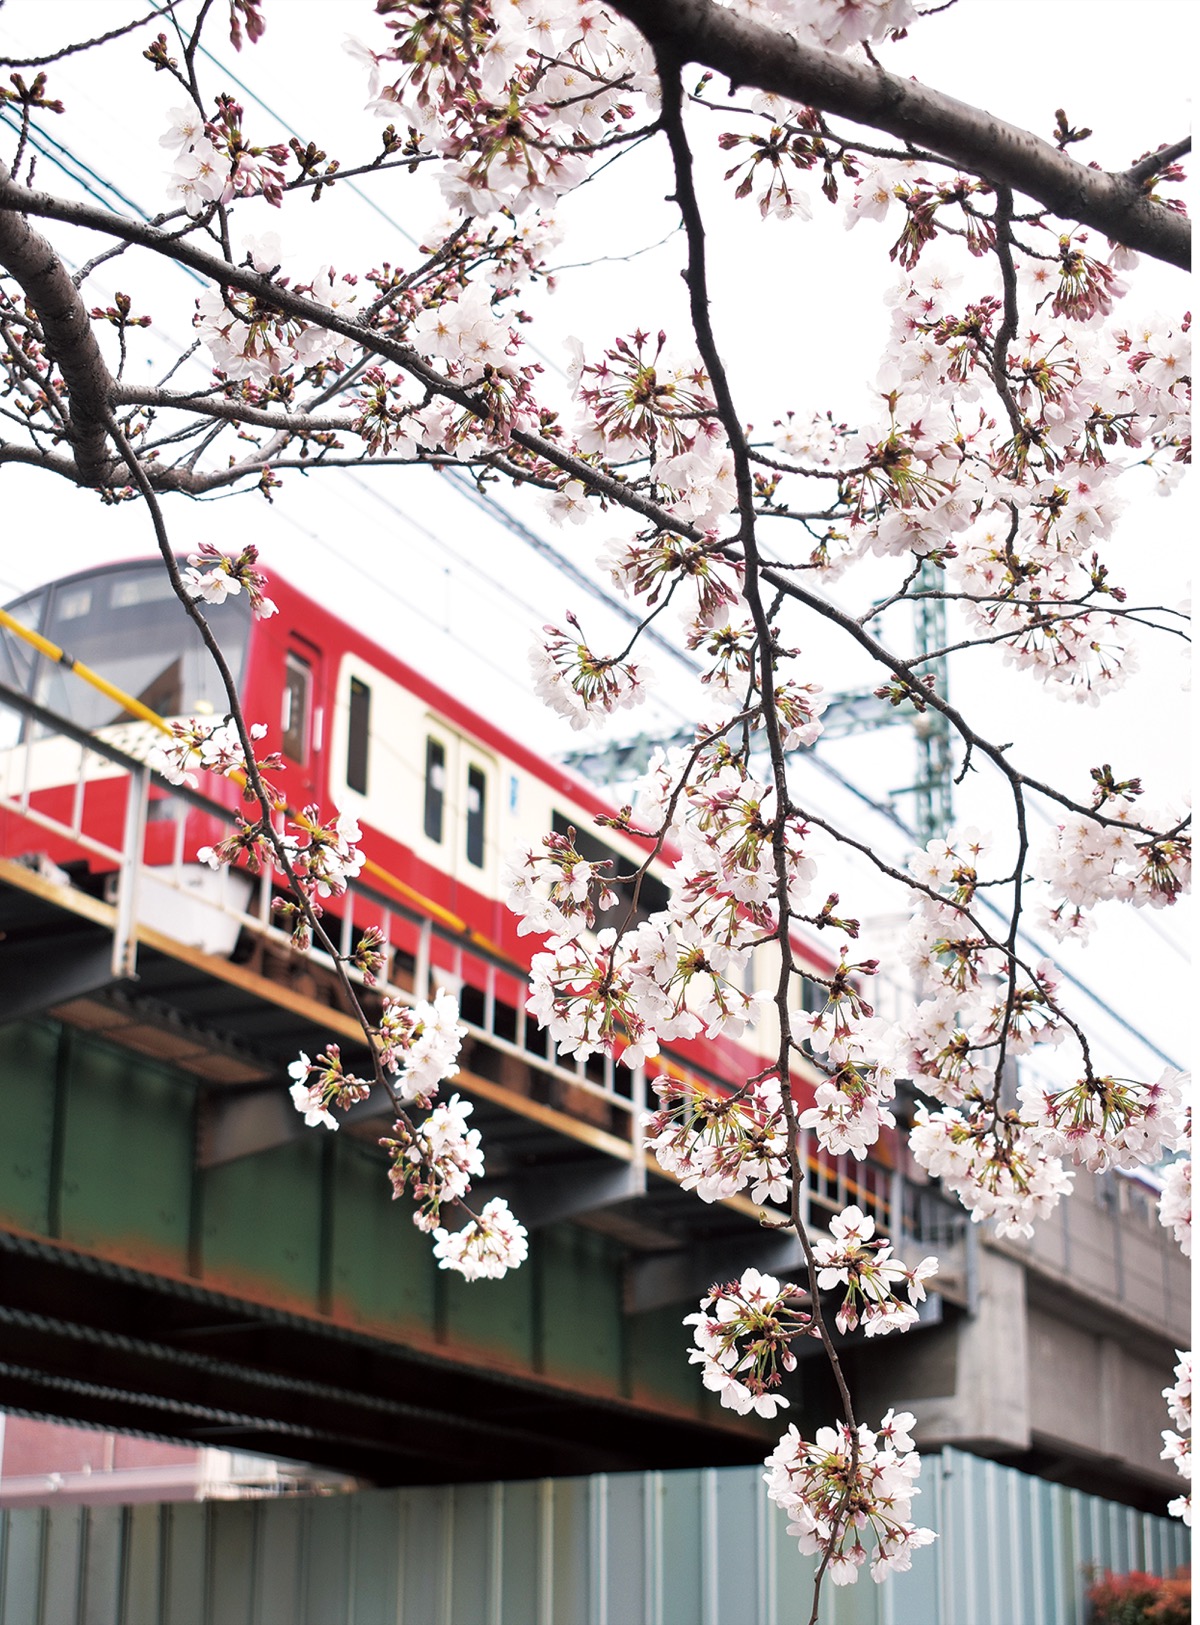 赤い電車と桜の競演